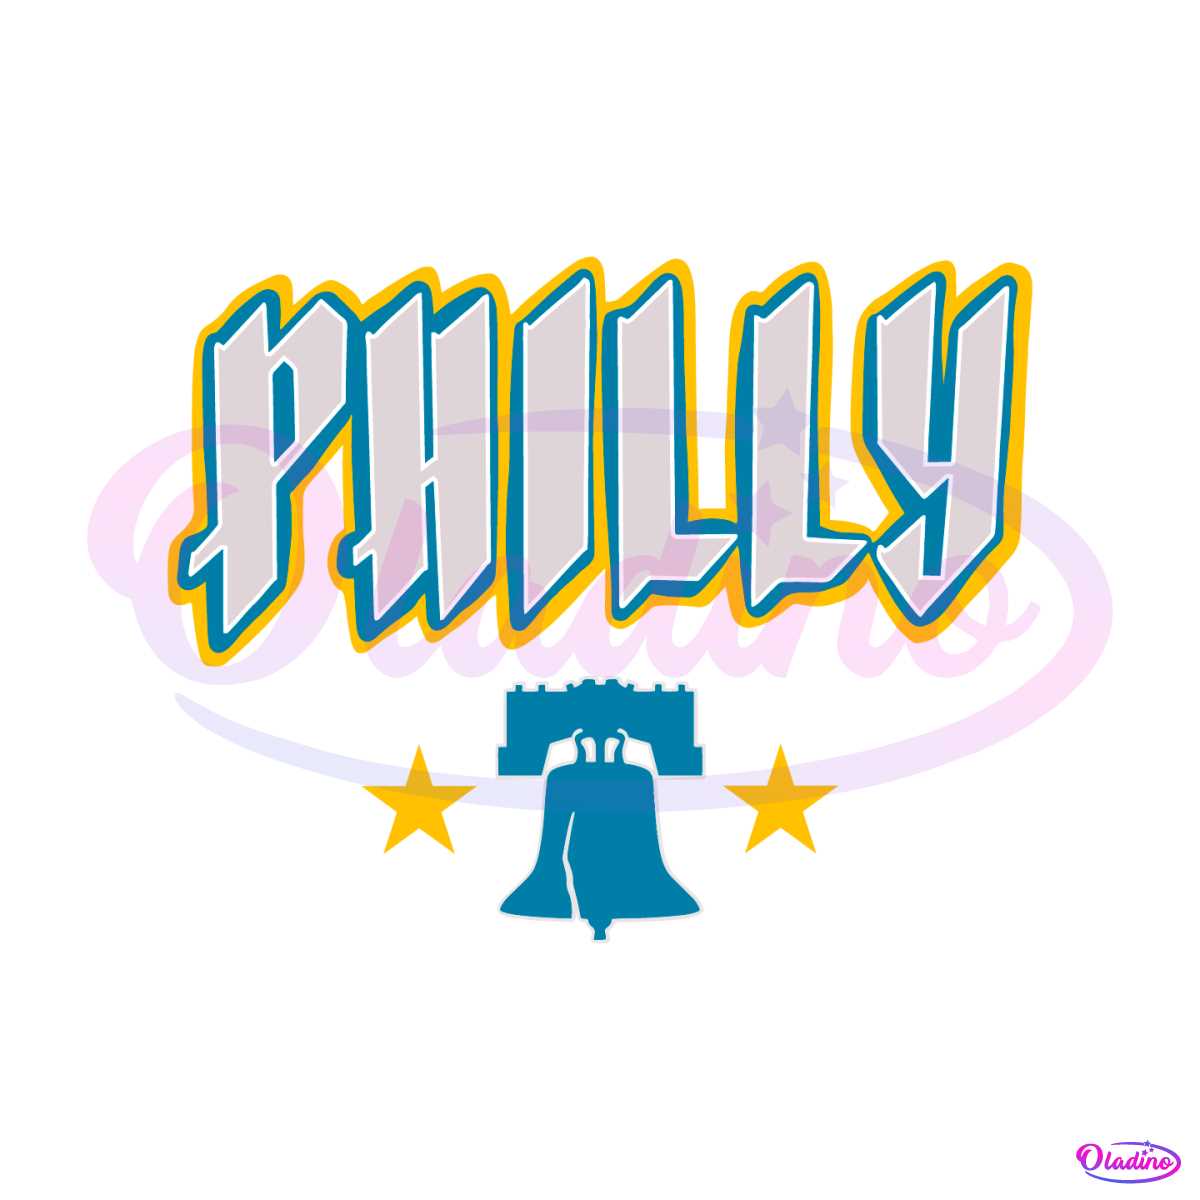 philly-bell-philadelphia-phillies-baseball-svg